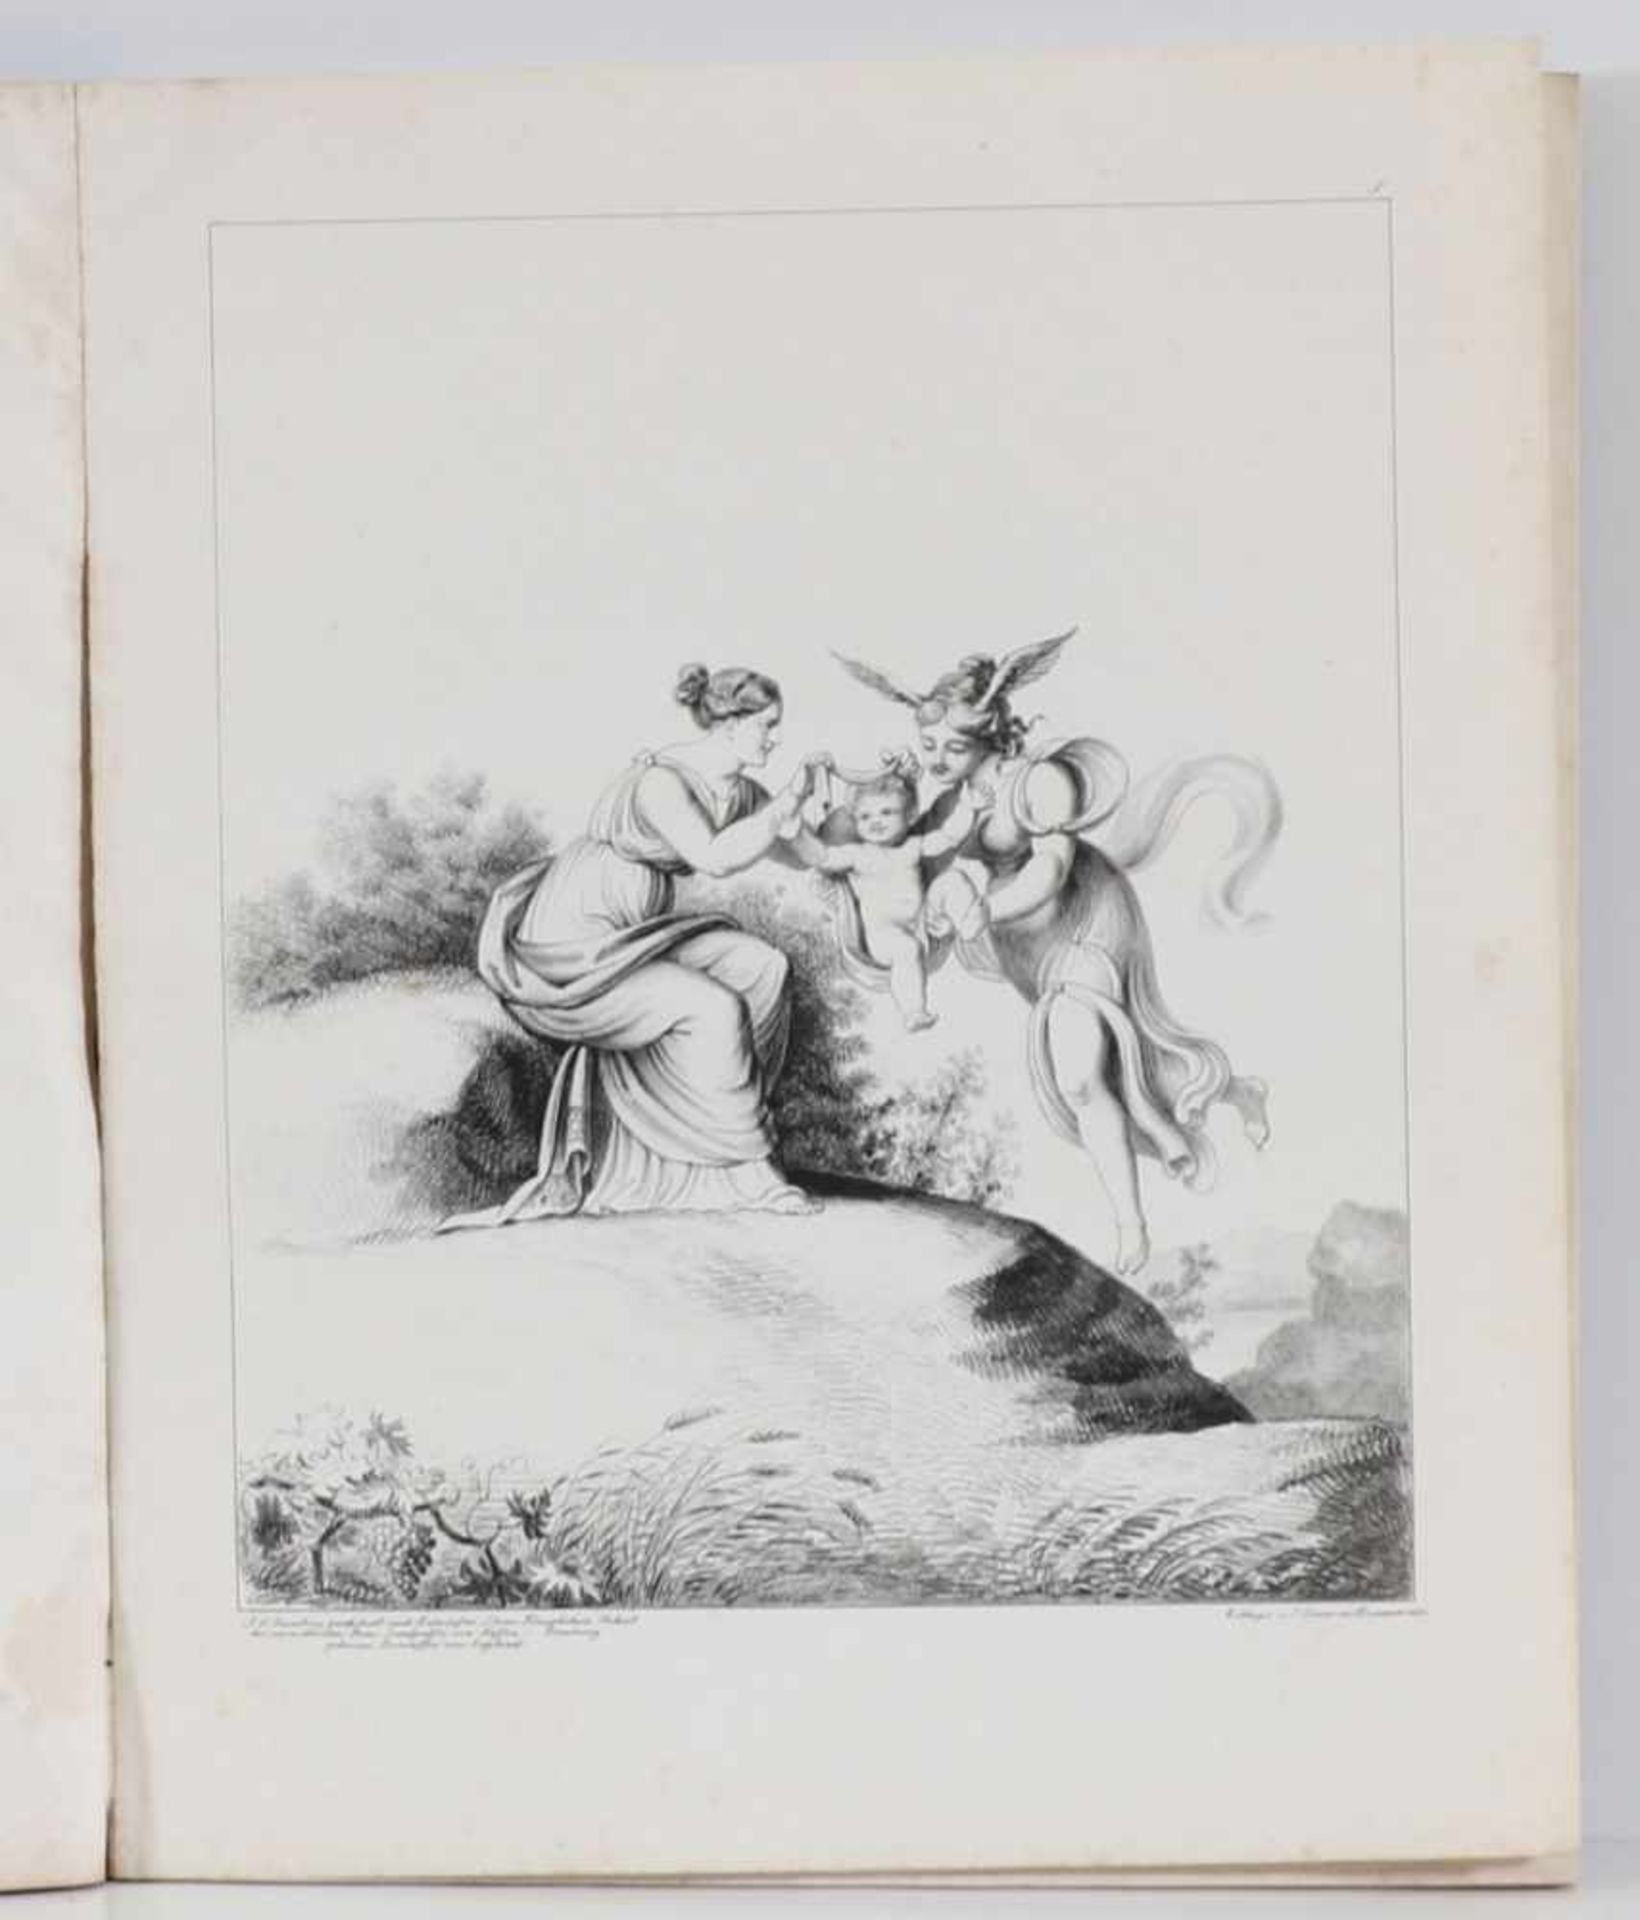 Johann Heinrich RambergHannover 1763 - 1840 nach - "Genius. Imacination. Phantasie." - Hannover,